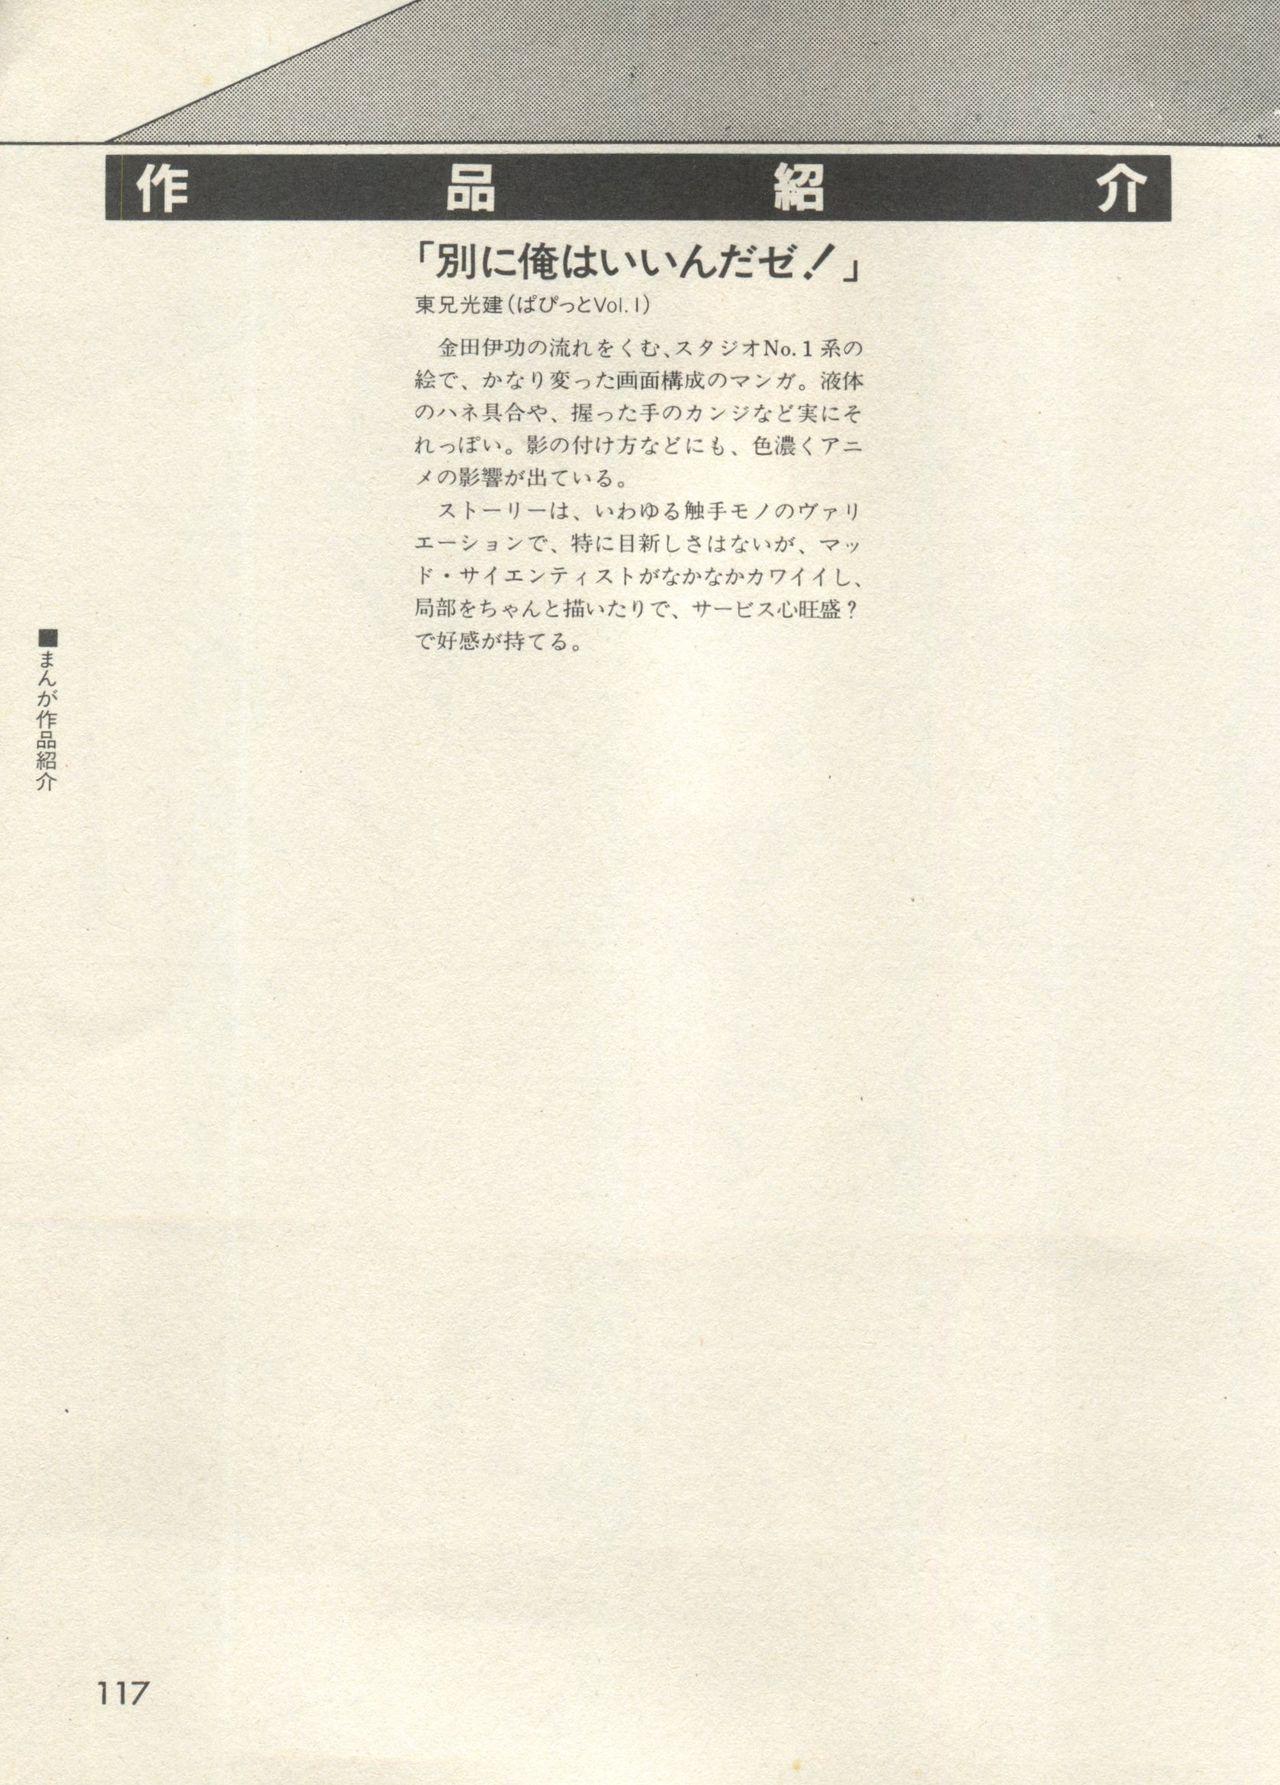 Bishoujo Shoukougun - Lolita Syndrome 7 119